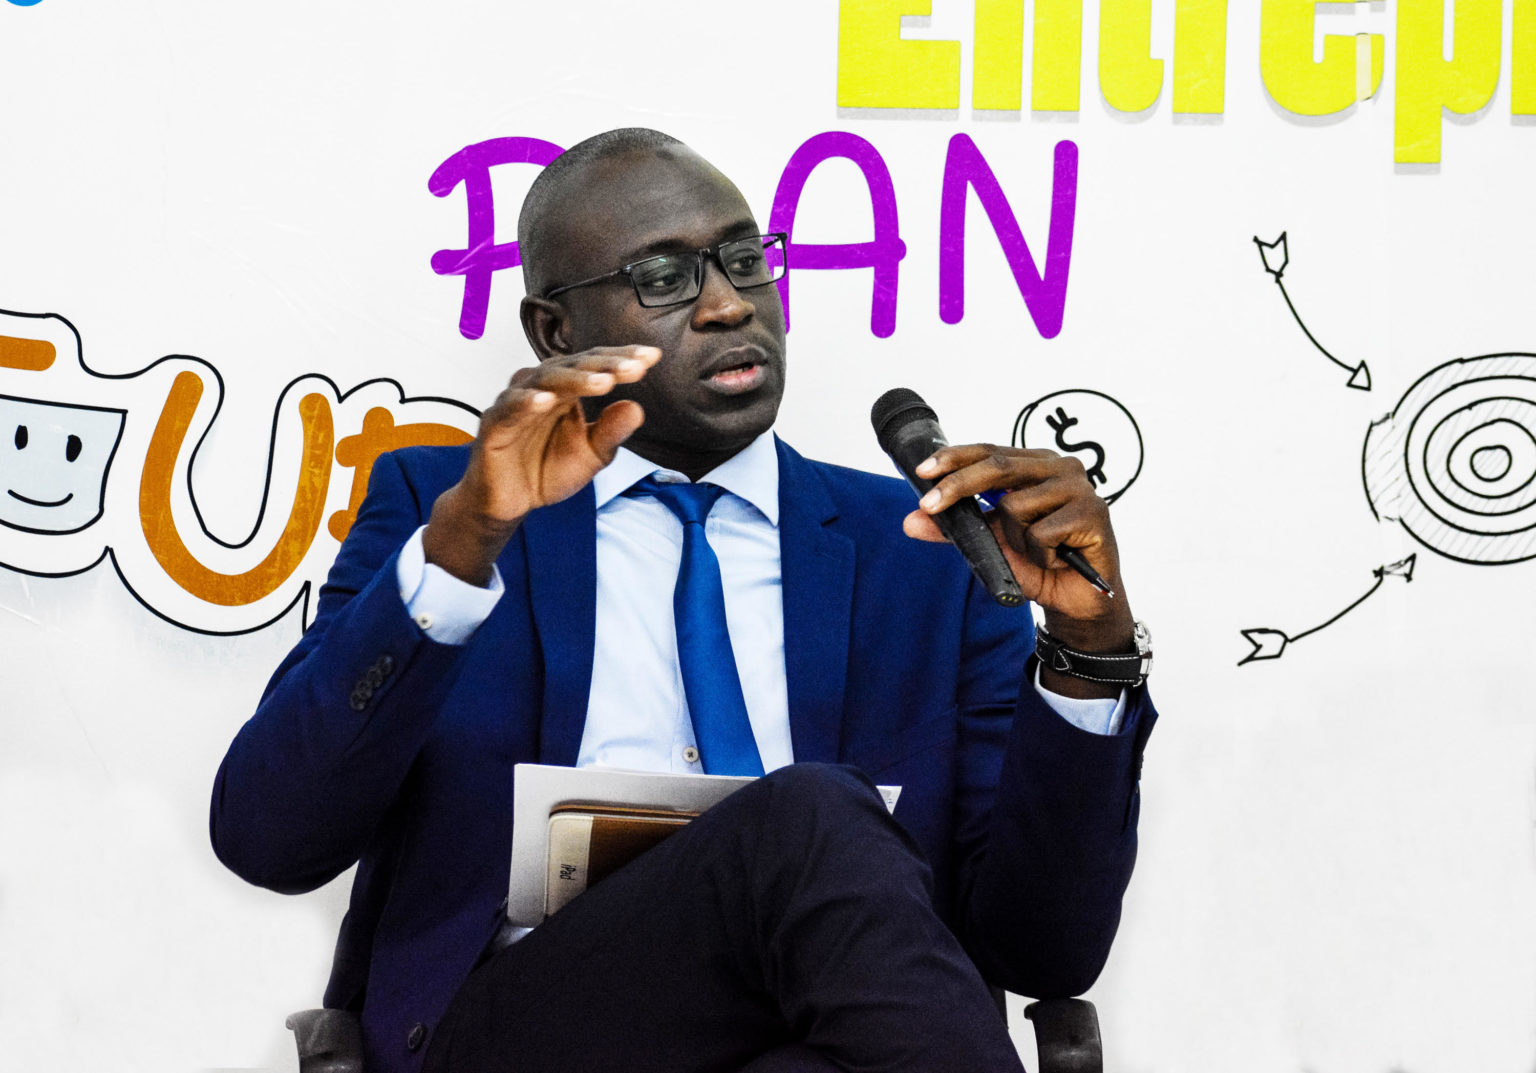 Mauritanie: Dahaba Diagana, co-fondateur de la startup EfficaSYS, optimiste pour l’avenir